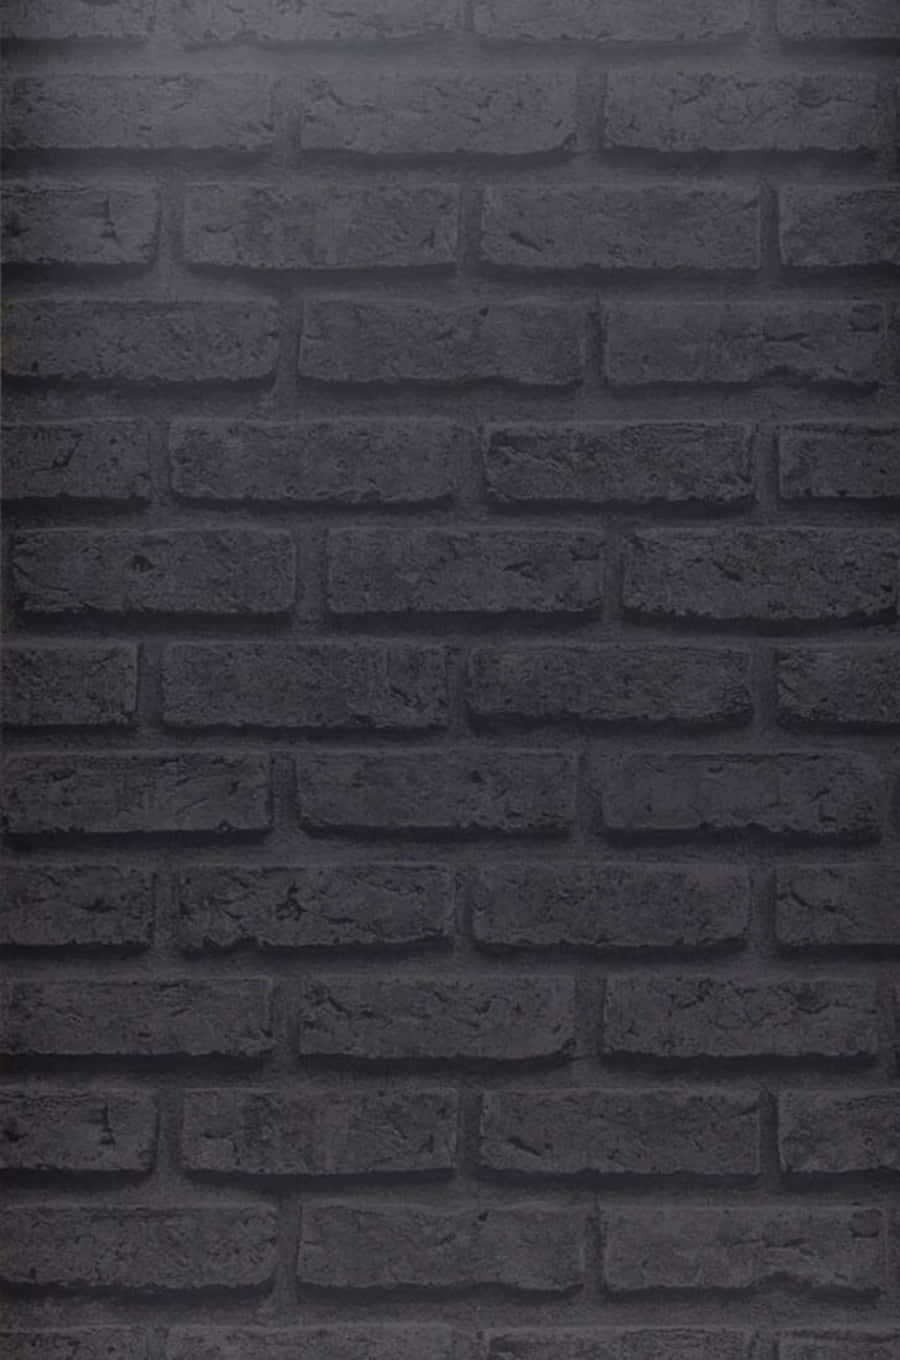 Black And Gray Brick Wall Wallpaper